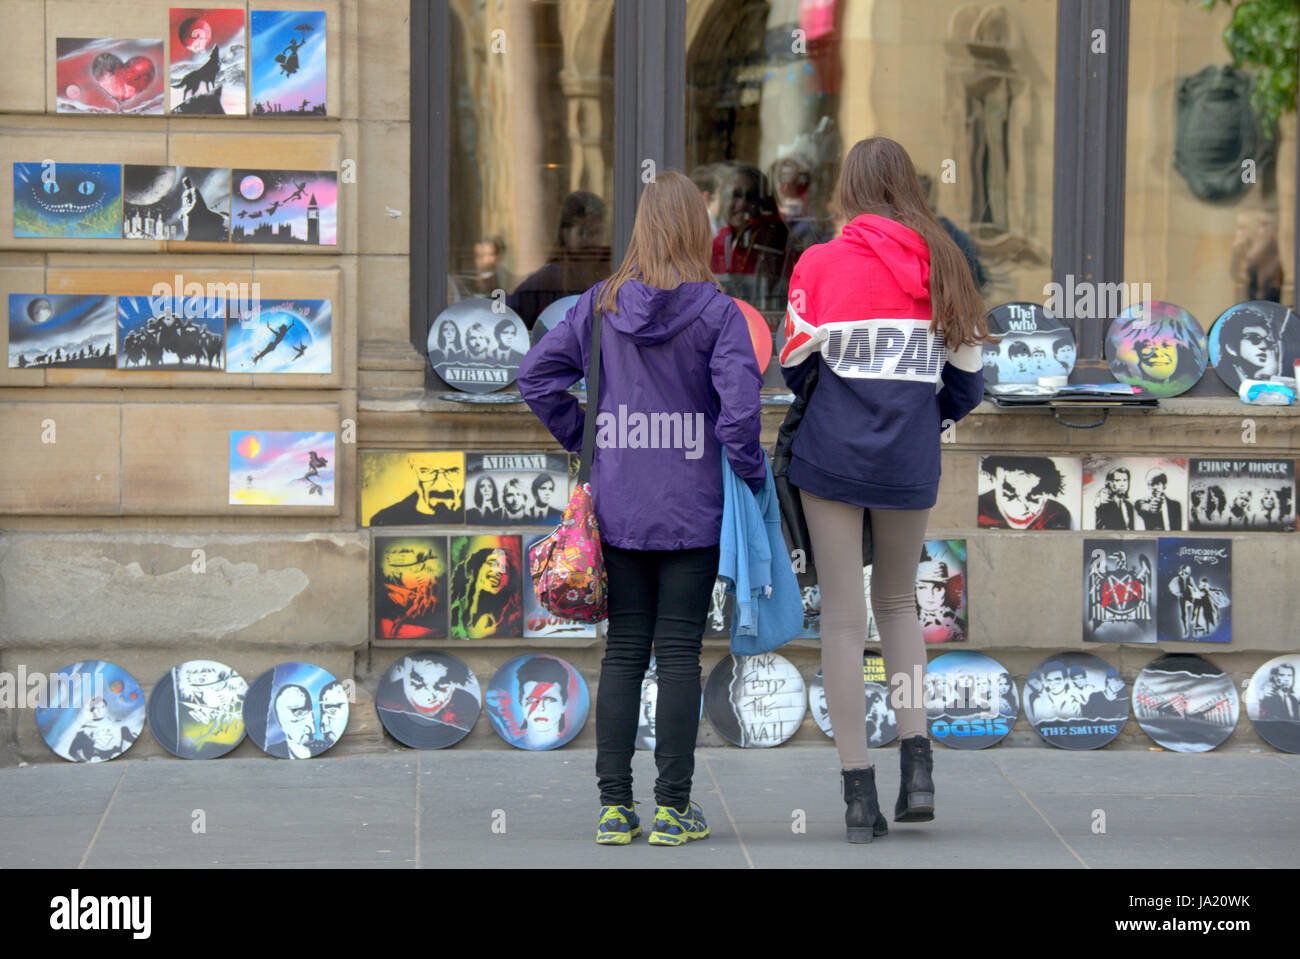 Los turistas en las calles de Glasgow Escocia comprando ilustraciones Foto de stock